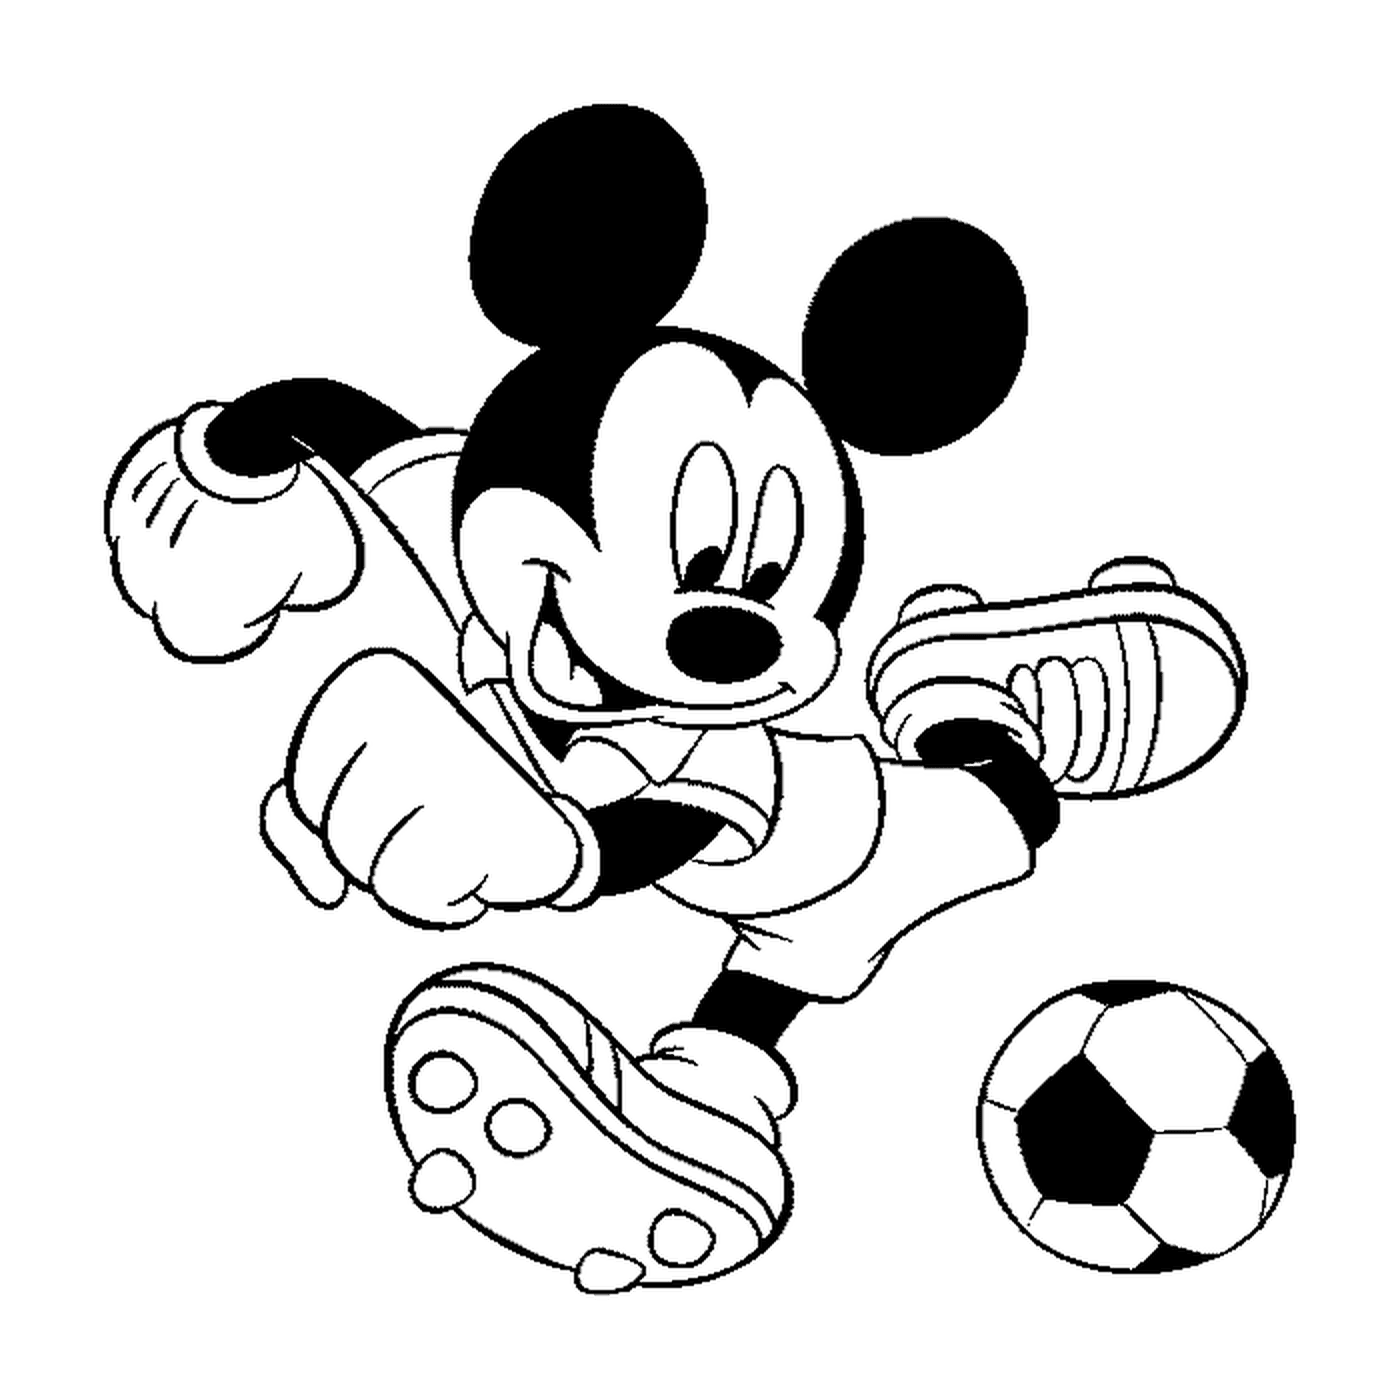  Mickey Mouse likes football 